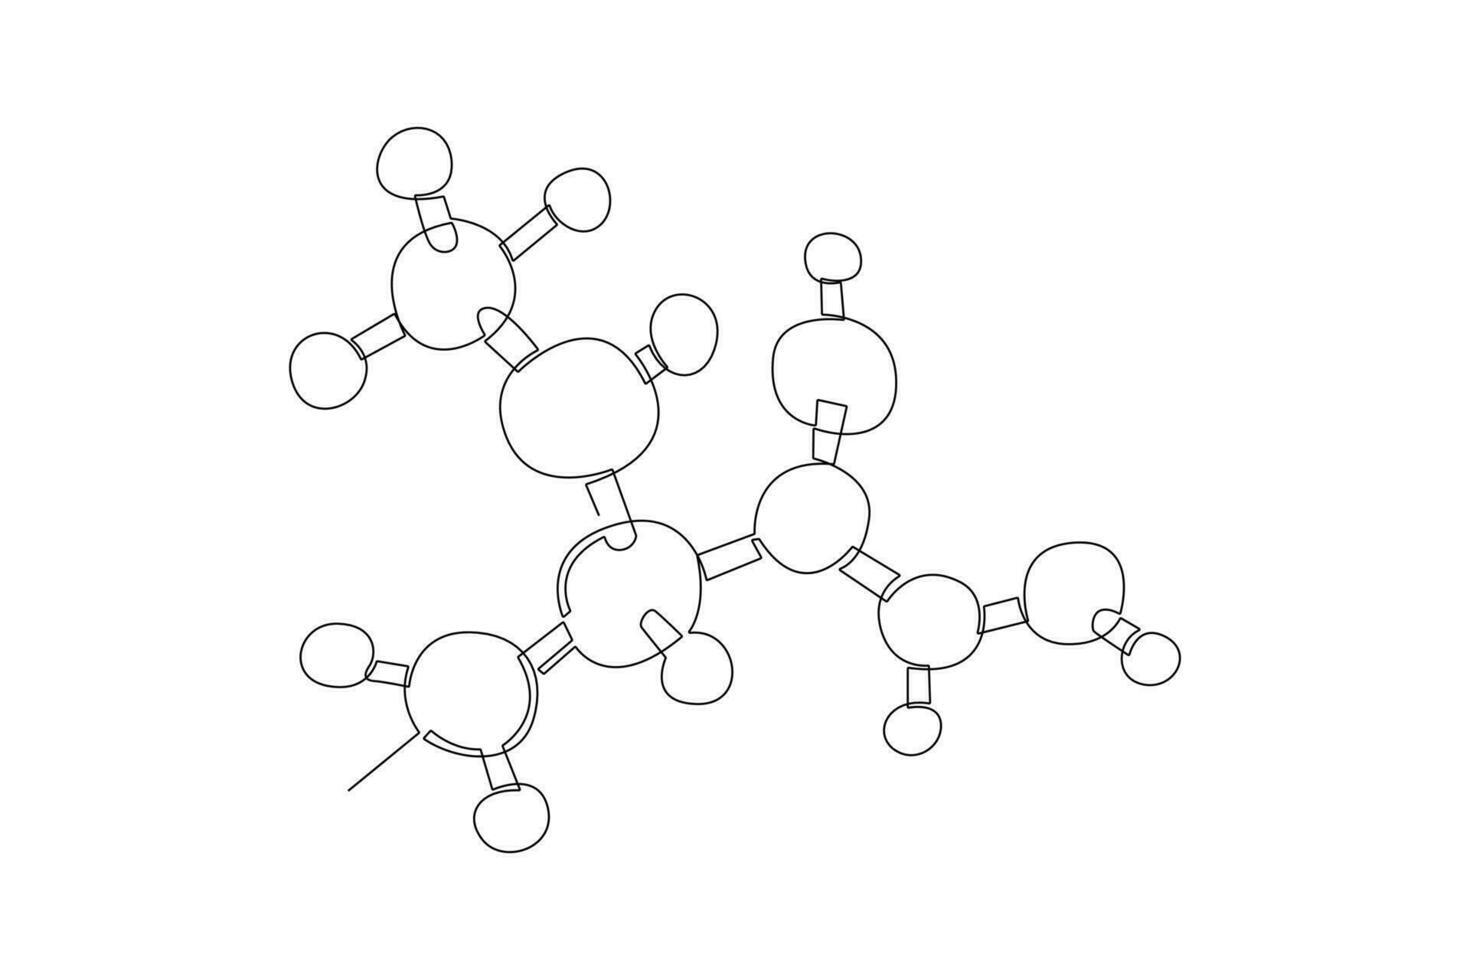 uno continuo linea disegno di chimica e fisica laboratorio attrezzatura concetto. scarabocchio vettore illustrazione nel semplice lineare stile.